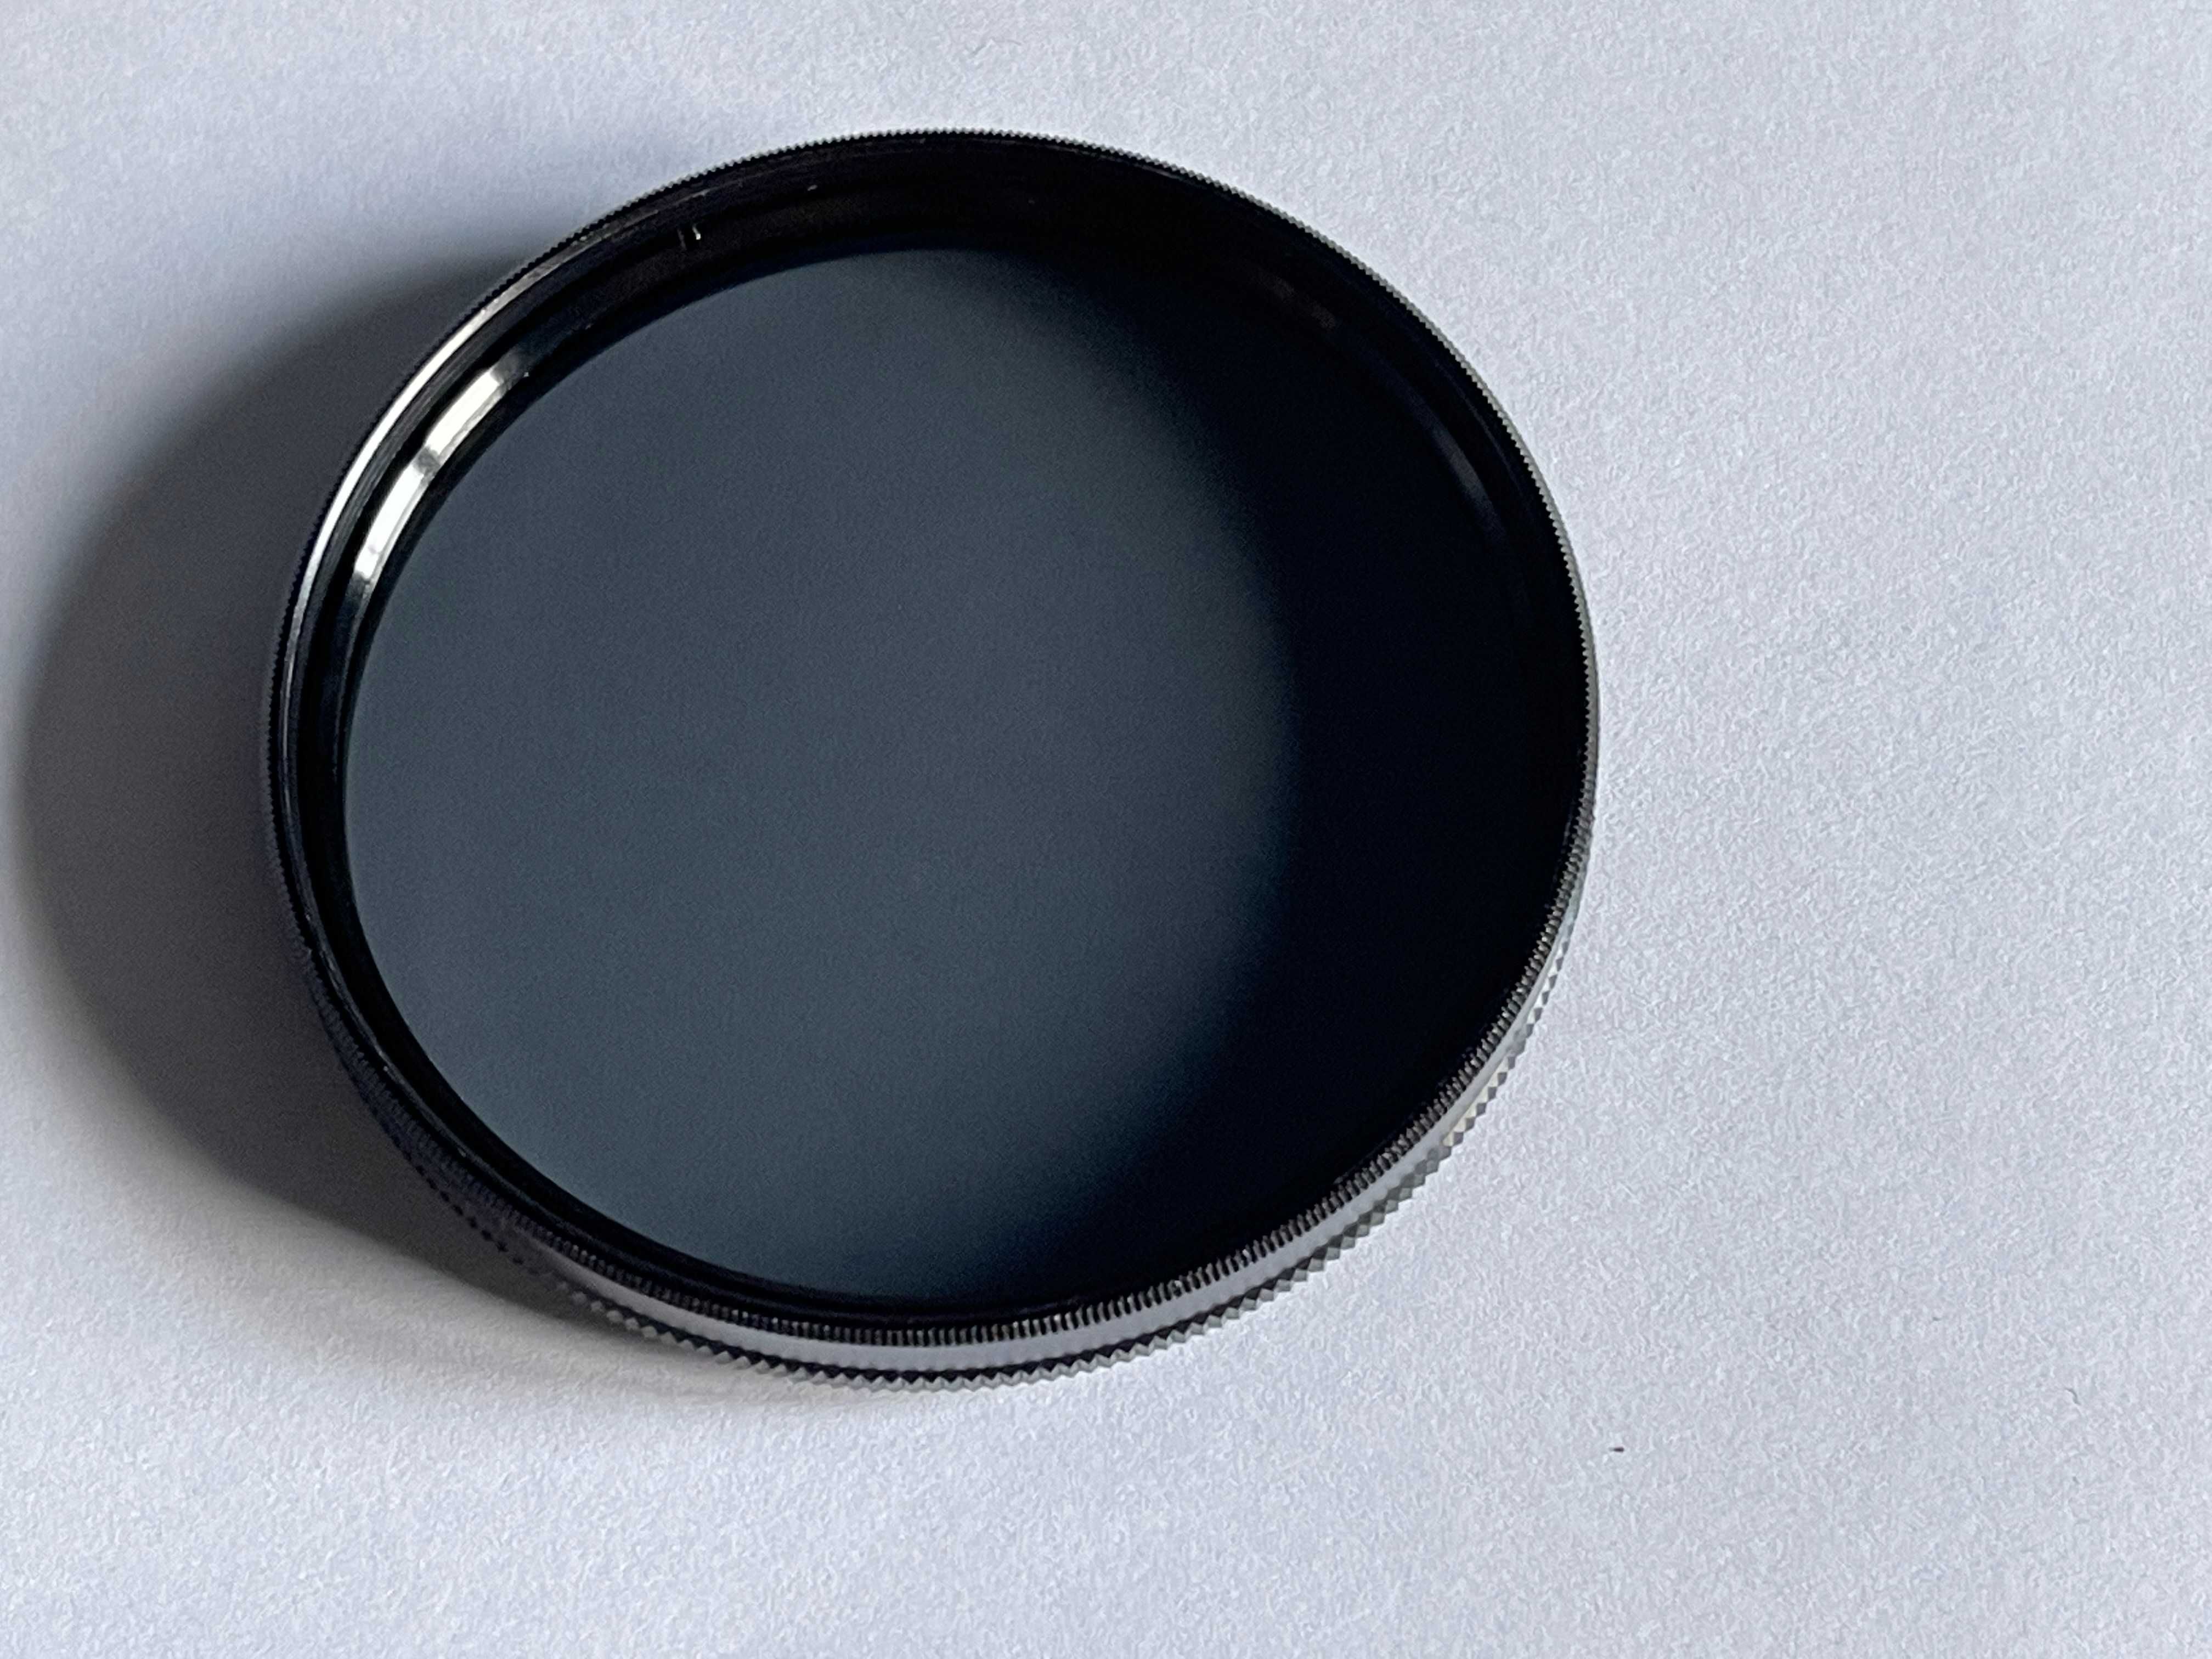 Filtru polarizare circulara Hoya PL-CIR 67mm